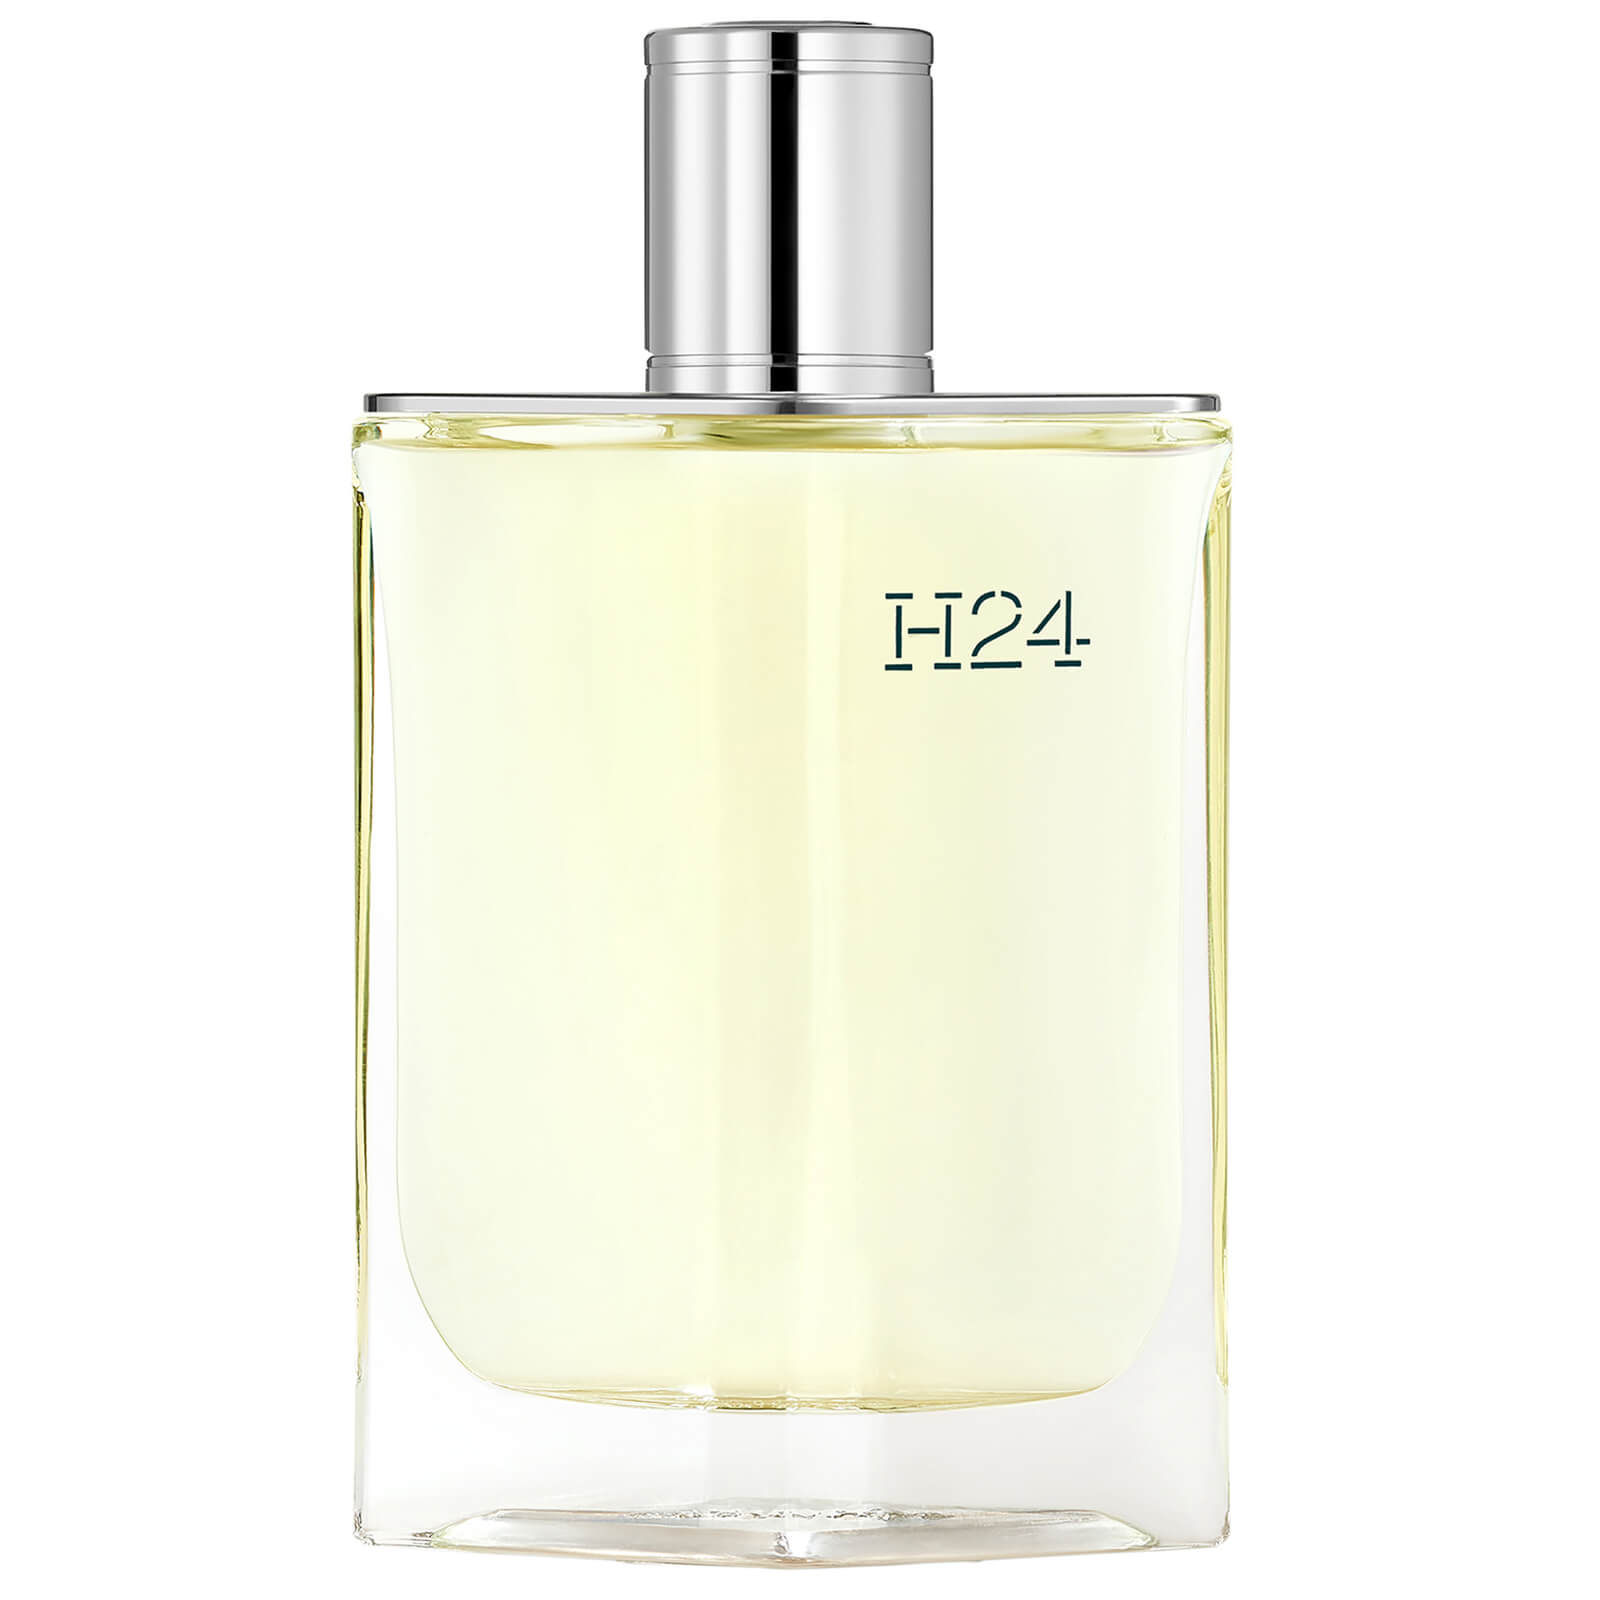 Photos - Women's Fragrance Hermes Hermès H24 Eau de Toilette 175ml 107334V0 